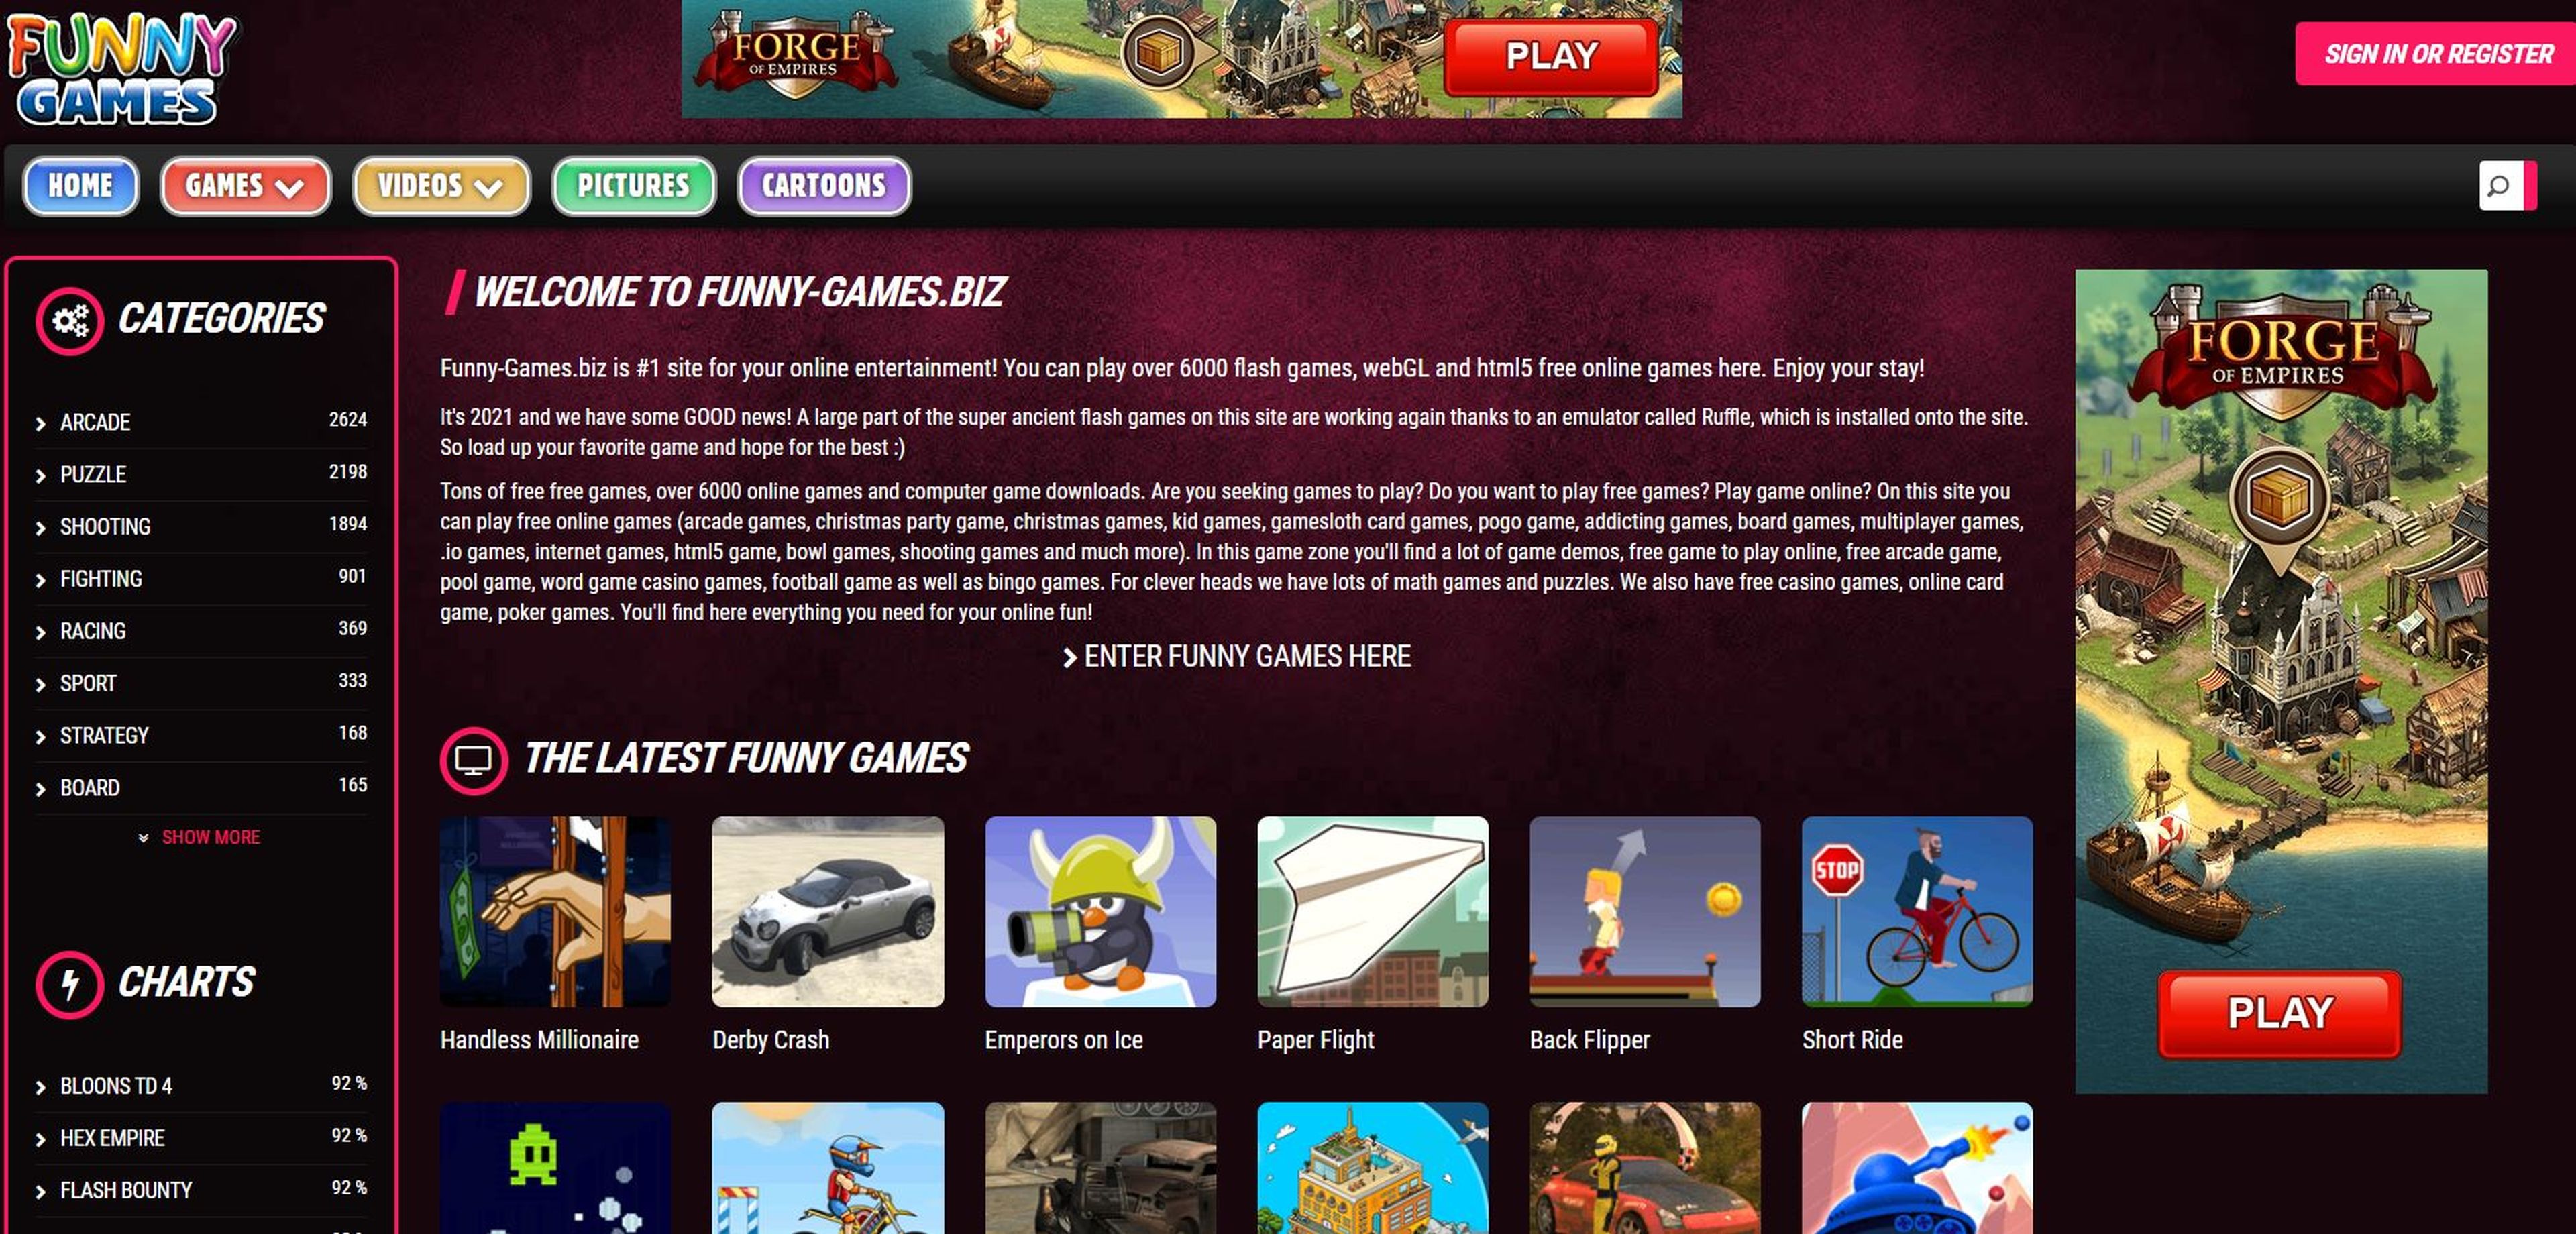 Juegos gratis que puedes jugar desde tu navegador de manera legal